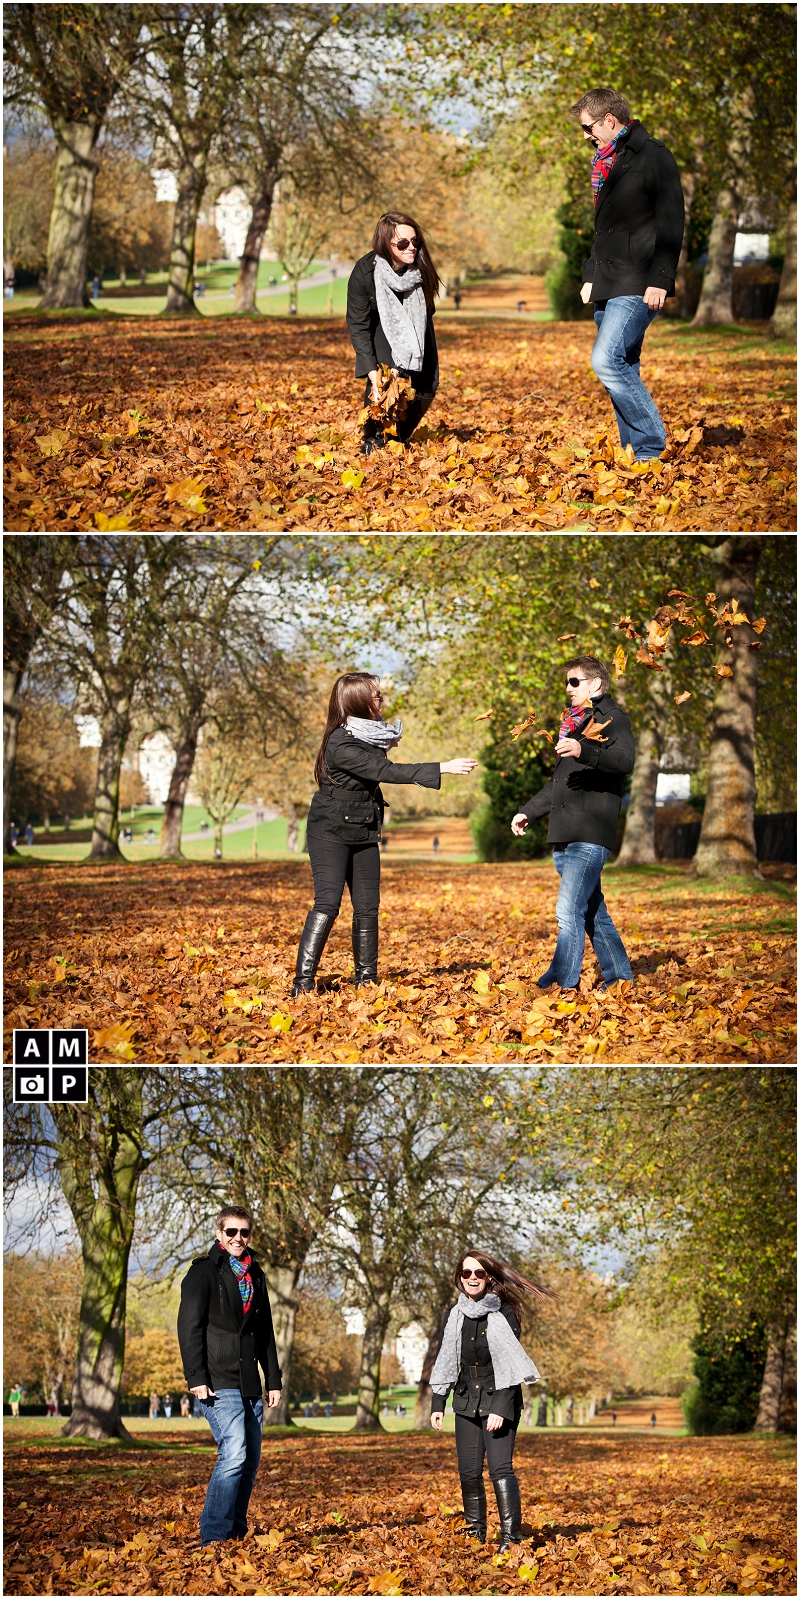 "Romantic-Autumn-Engagement-Photos-in-Windsor"